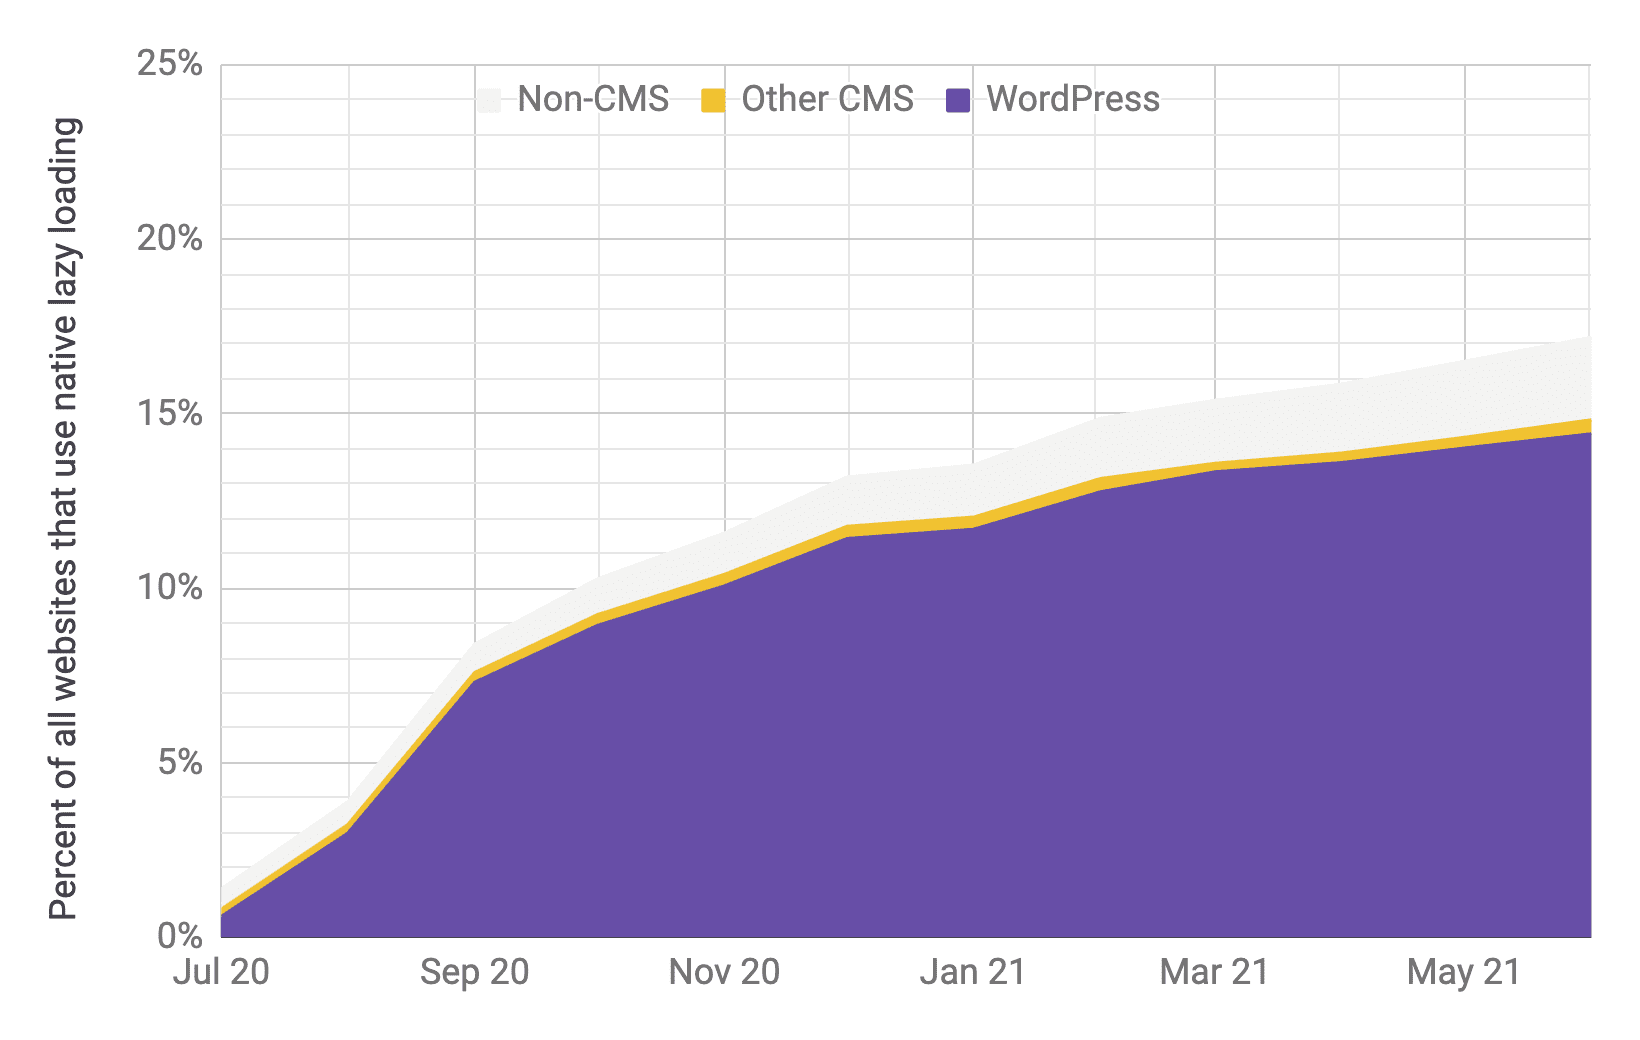 Zeitreihendiagramm für die Einführung von Lazy Loading, wobei WordPress im Vergleich zu anderen CMS und Nicht-CMS die vorherrschende Rolle spielt. Der Anteil ist ähnlich wie im vorherigen Diagramm. Zwischen Juli 2020 und Juni 2021 ist die Akzeptanzrate von 1% auf 17% gestiegen.